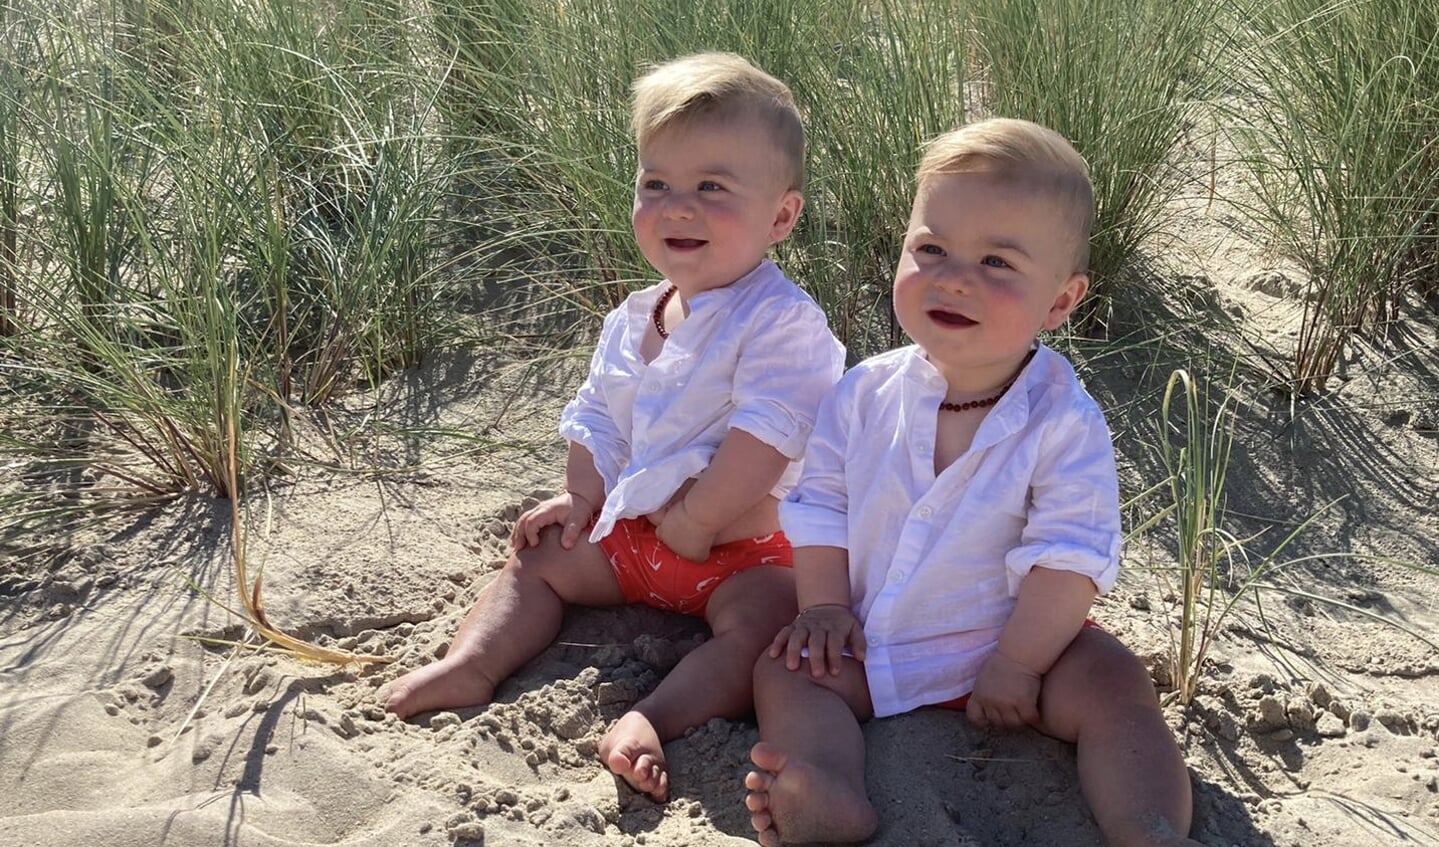 ,,Onze eerste vakantie met de tweeling Jax & Finn in Cadzand-Bad. Tijdens een heerlijk dagje strand en de mannen hun eerste ontmoeting met de zee!"